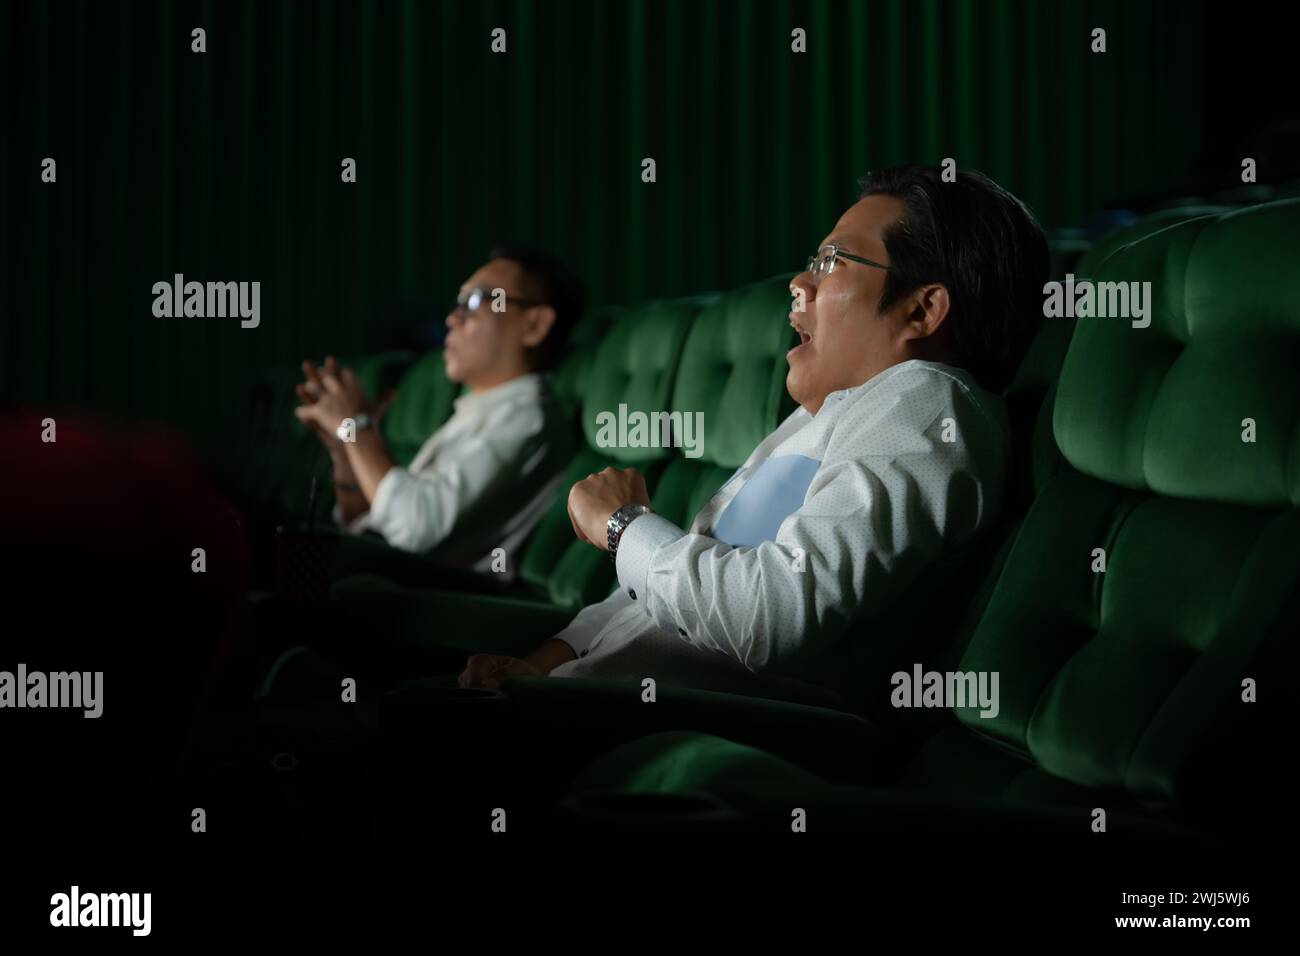 Ein junges Paar, das sich im Kino Filme anschaut und auf den grünen Sitzen sitzt. Stockfoto